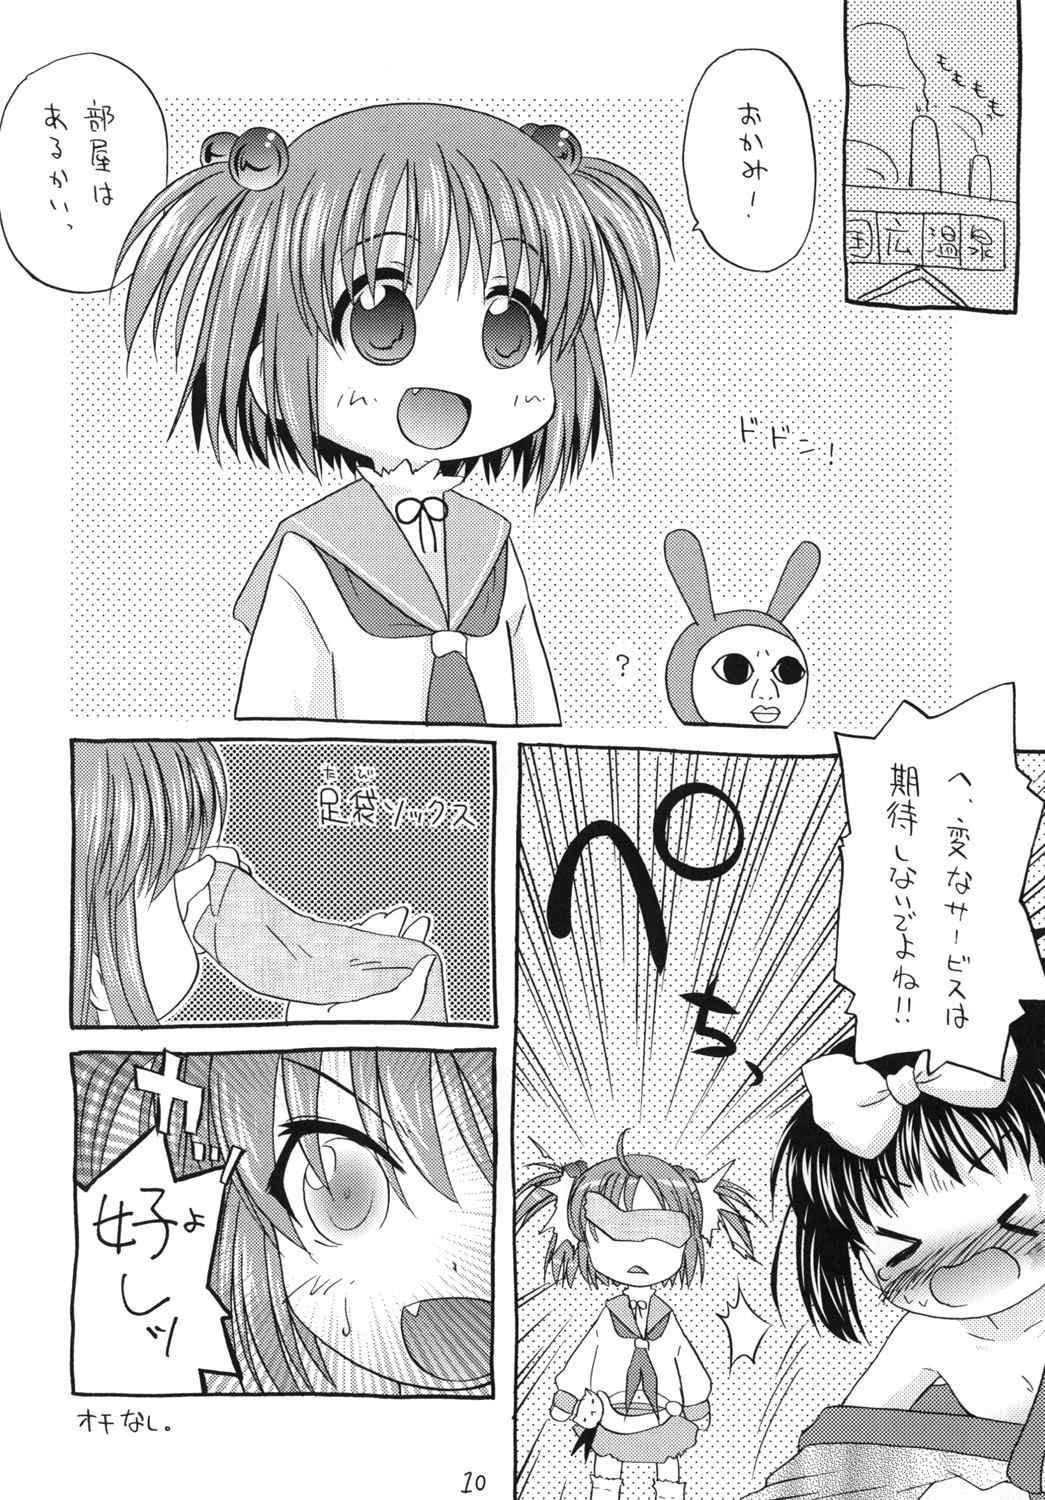 Toes Ichido wa Oide! - Saki Girlfriend - Page 10